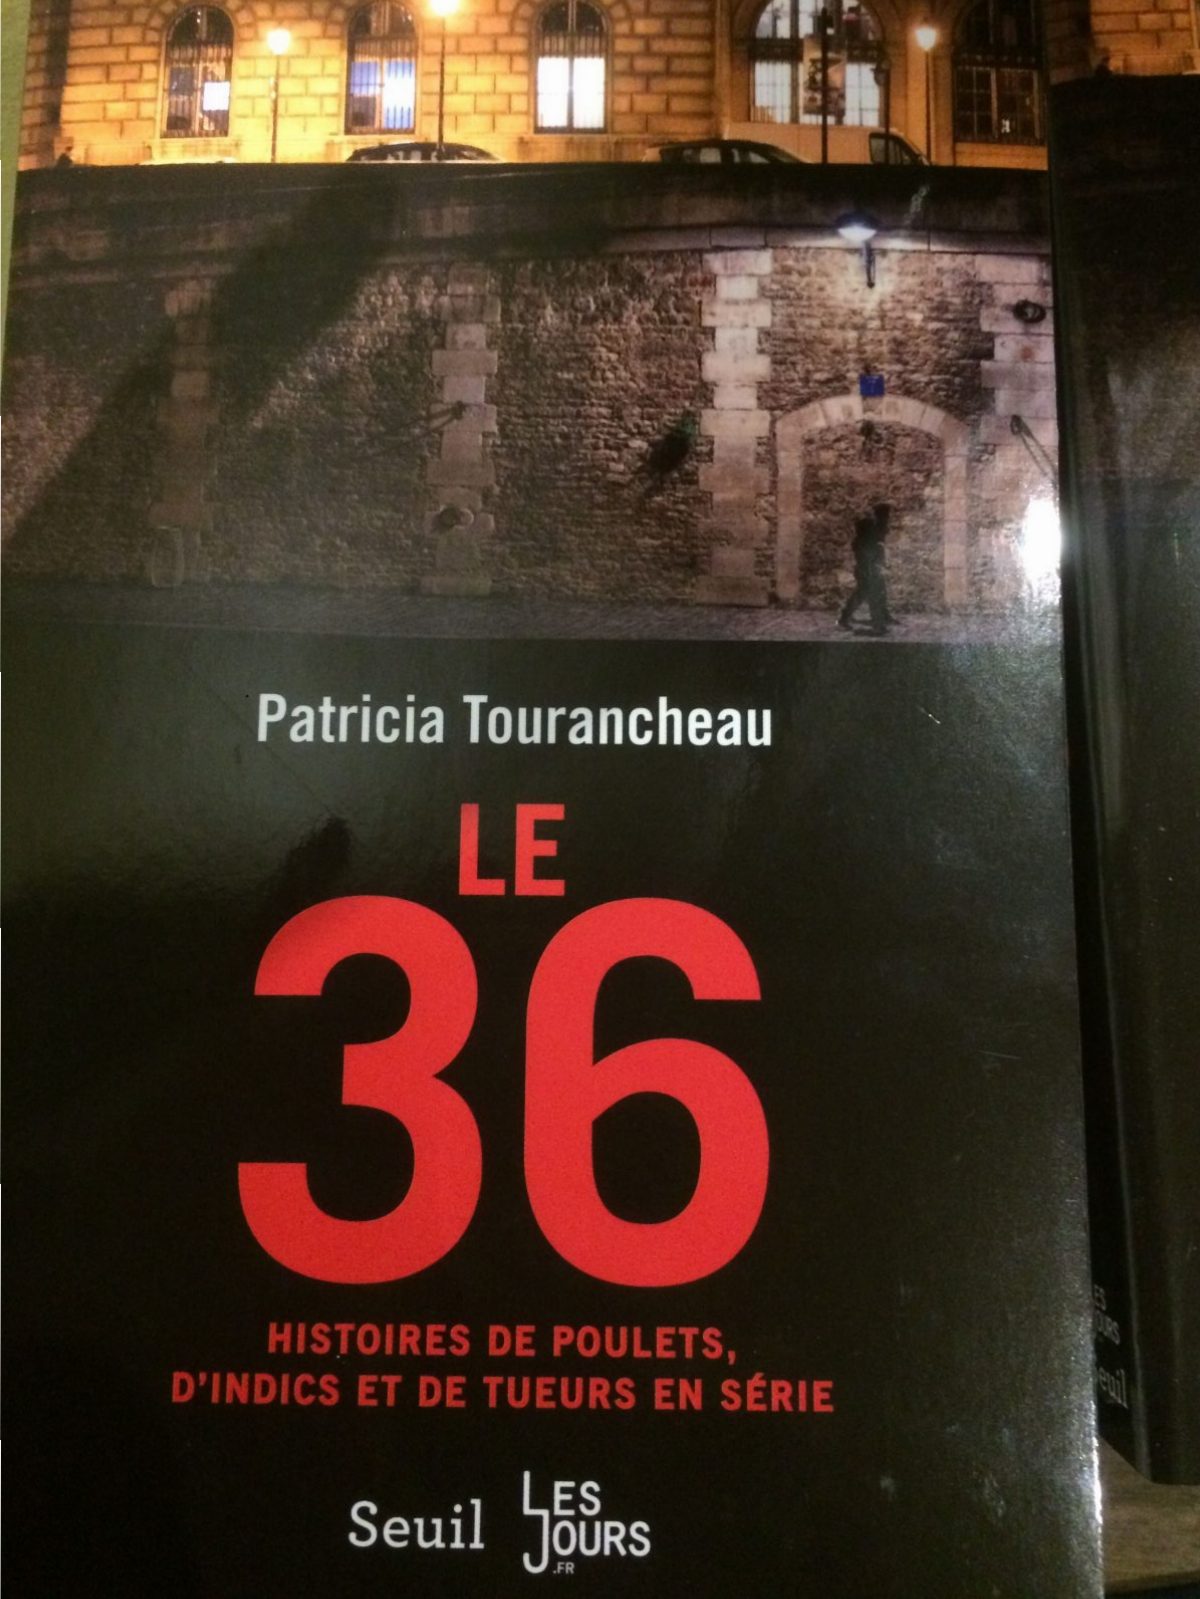 Patricia Tourancheau : « Au lieu de vouloir abolir la fessée, on devrait plutôt abolir les violences policières »